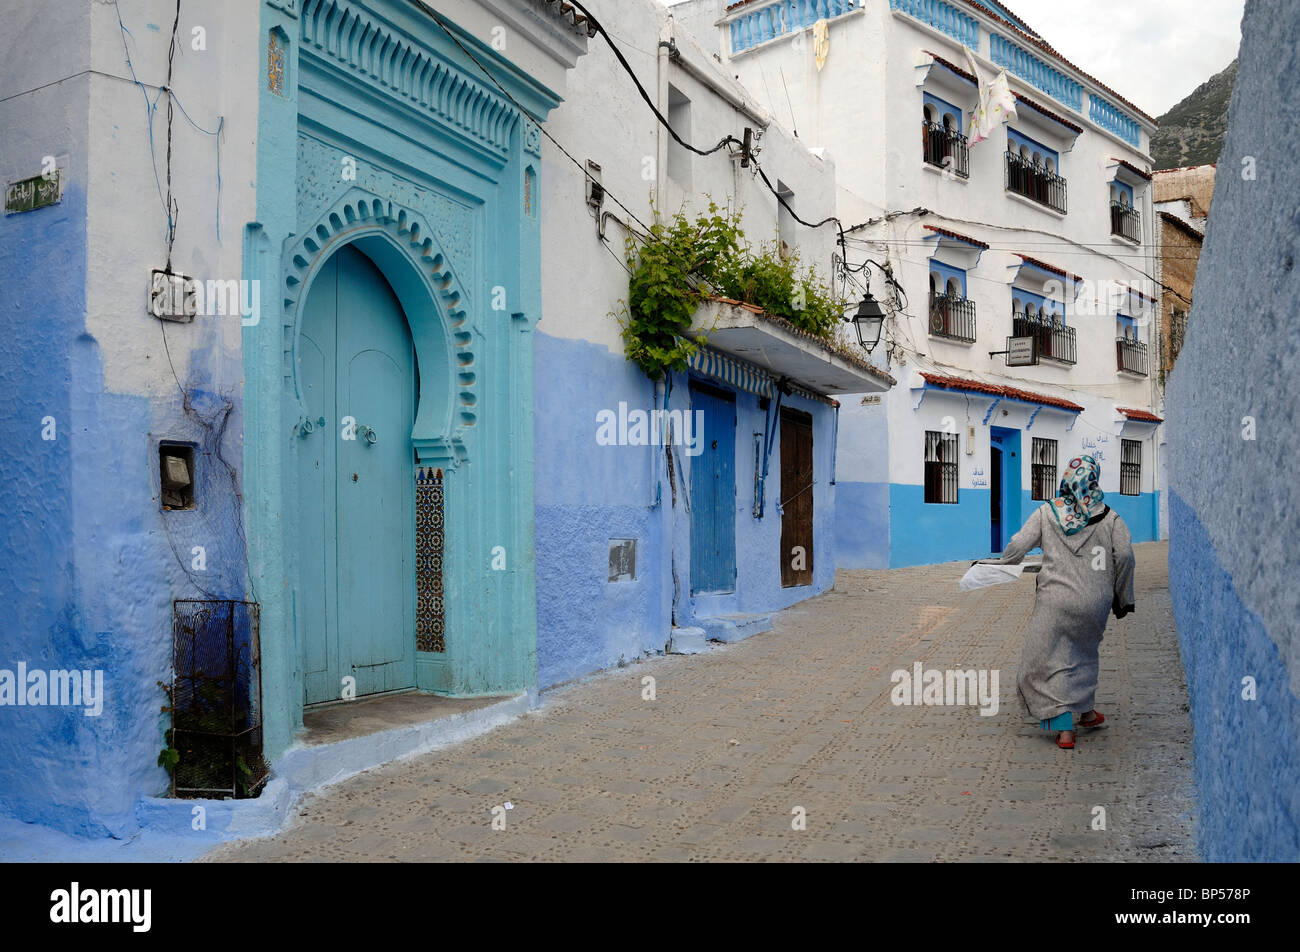 Straßenszene, Marokkanerin, blaue Häuser & blau Tür oder Eingang, Chefchaouen, Marokko Stockfoto